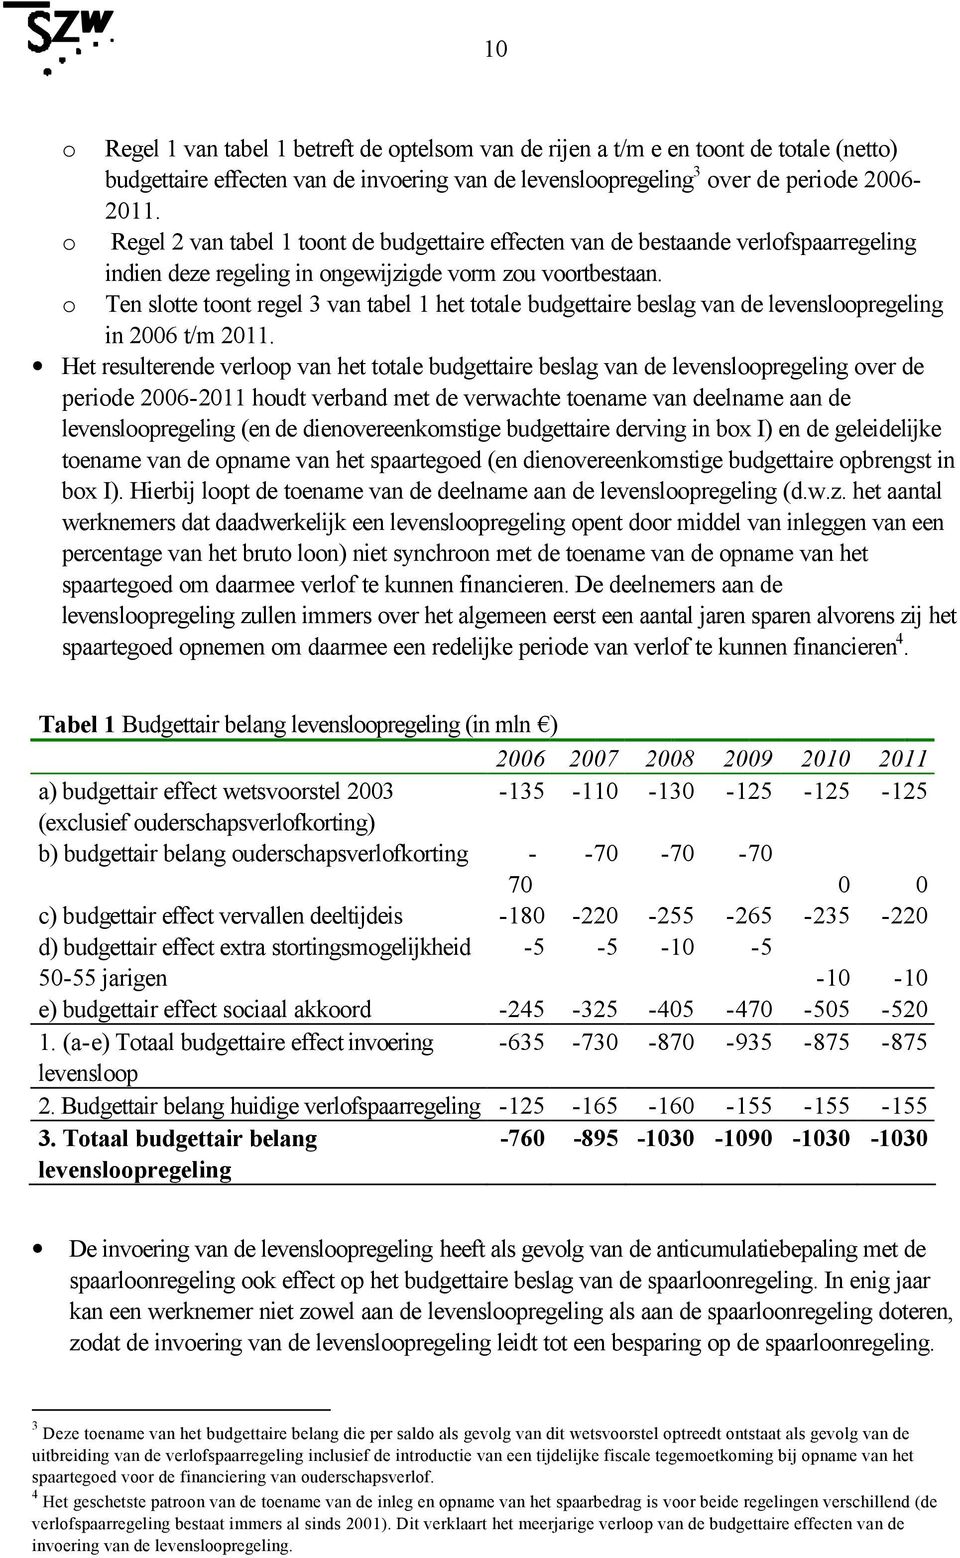 Ten slotte toont regel 3 van tabel 1 het totale budgettaire beslag van de levensloopregeling in 2006 t/m 2011.